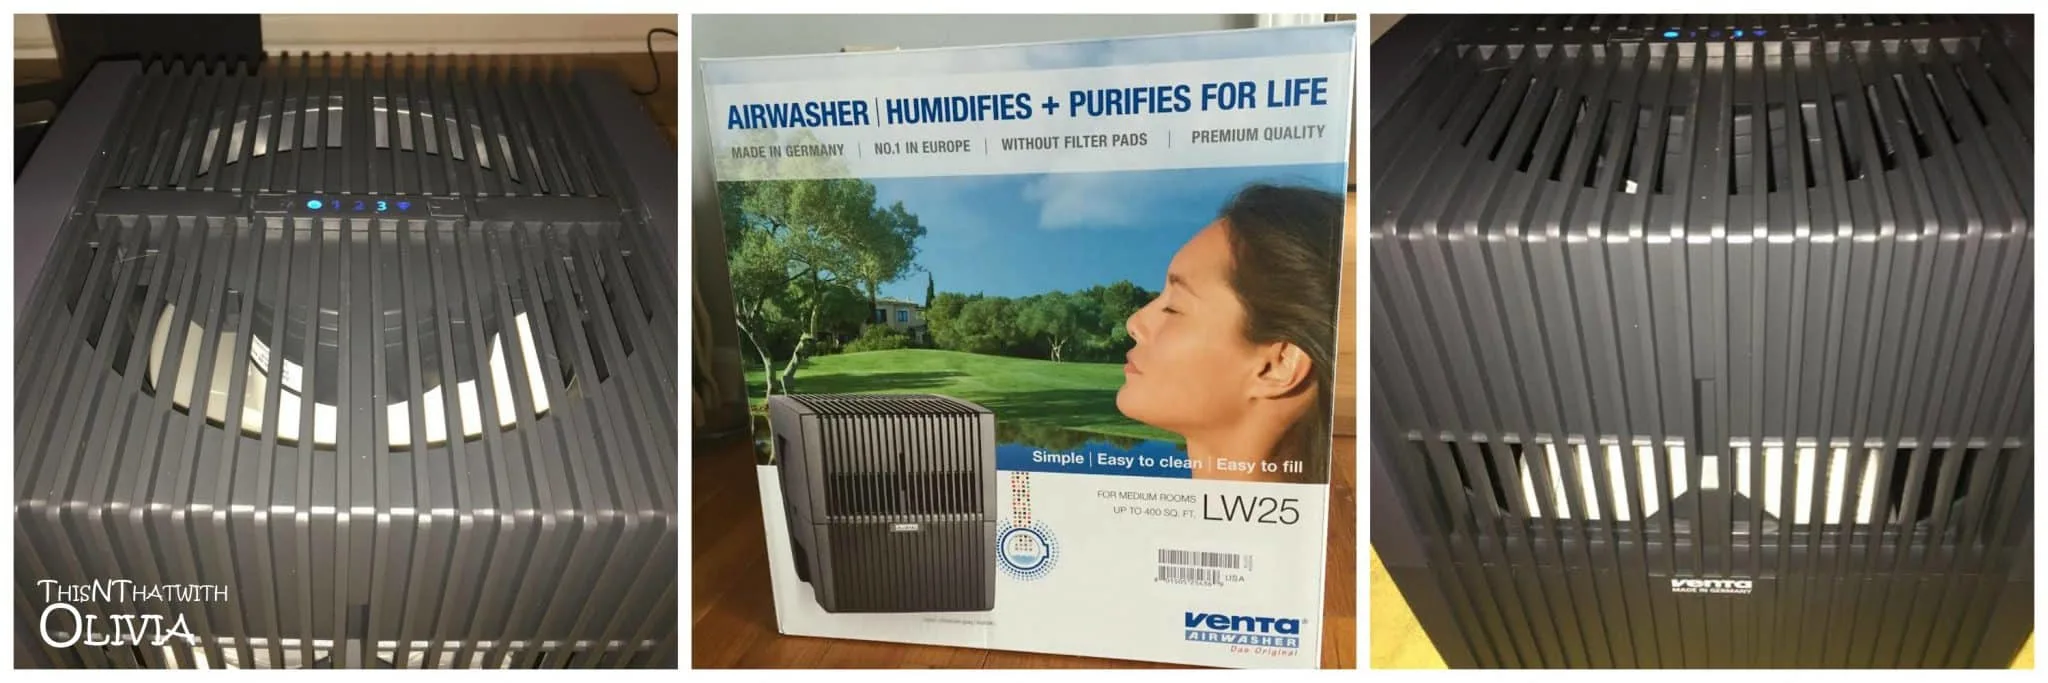 Venta Airwasher